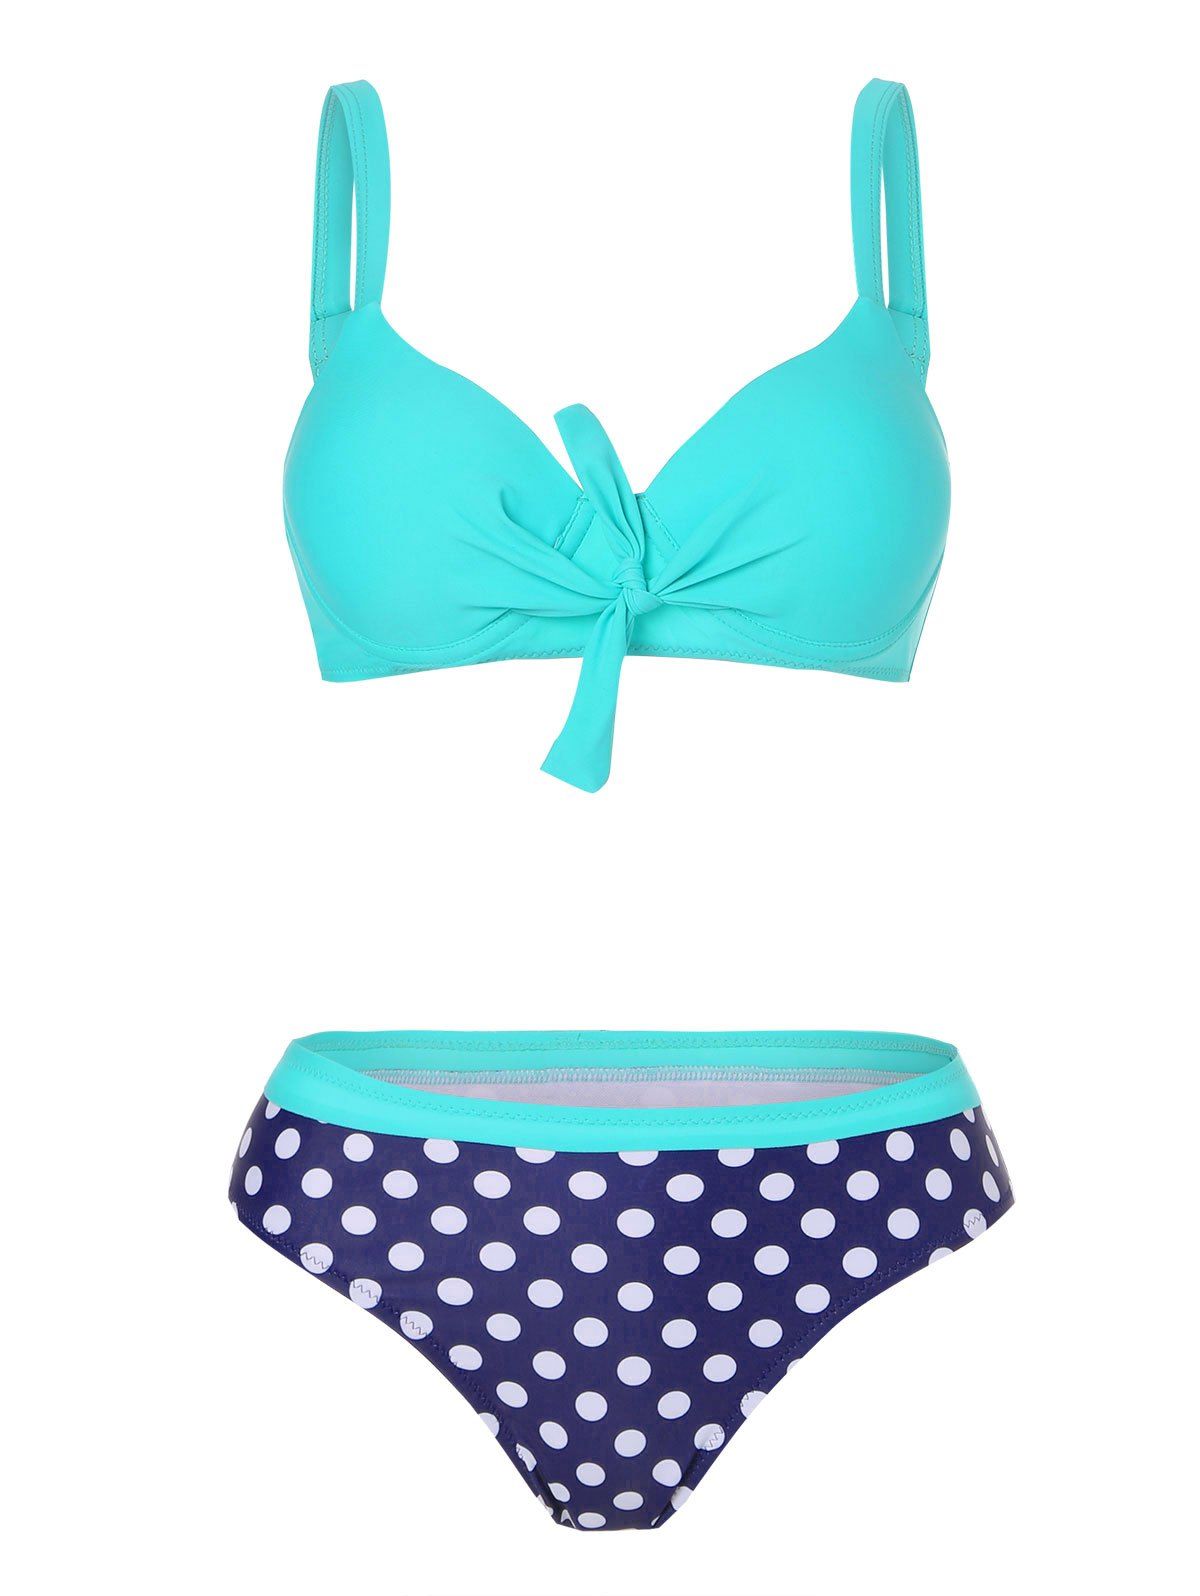 Polka Dot Vacation Swimsuit Knotted Push Up Bikini Swimwear - LIGHT BLUE XL